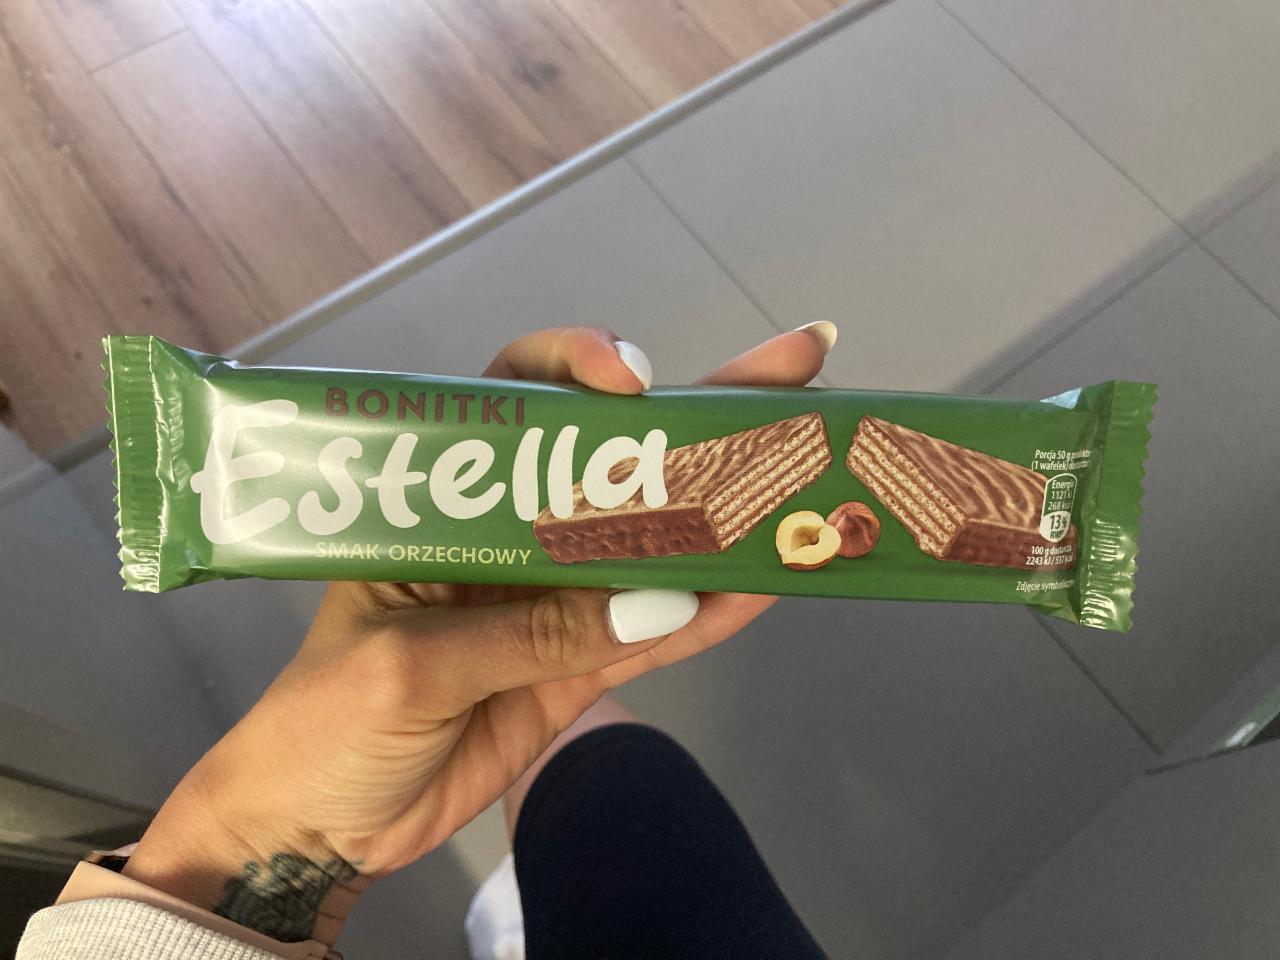 Фото - Батончик вафельный в шоколаде со вкусом ореха Estella